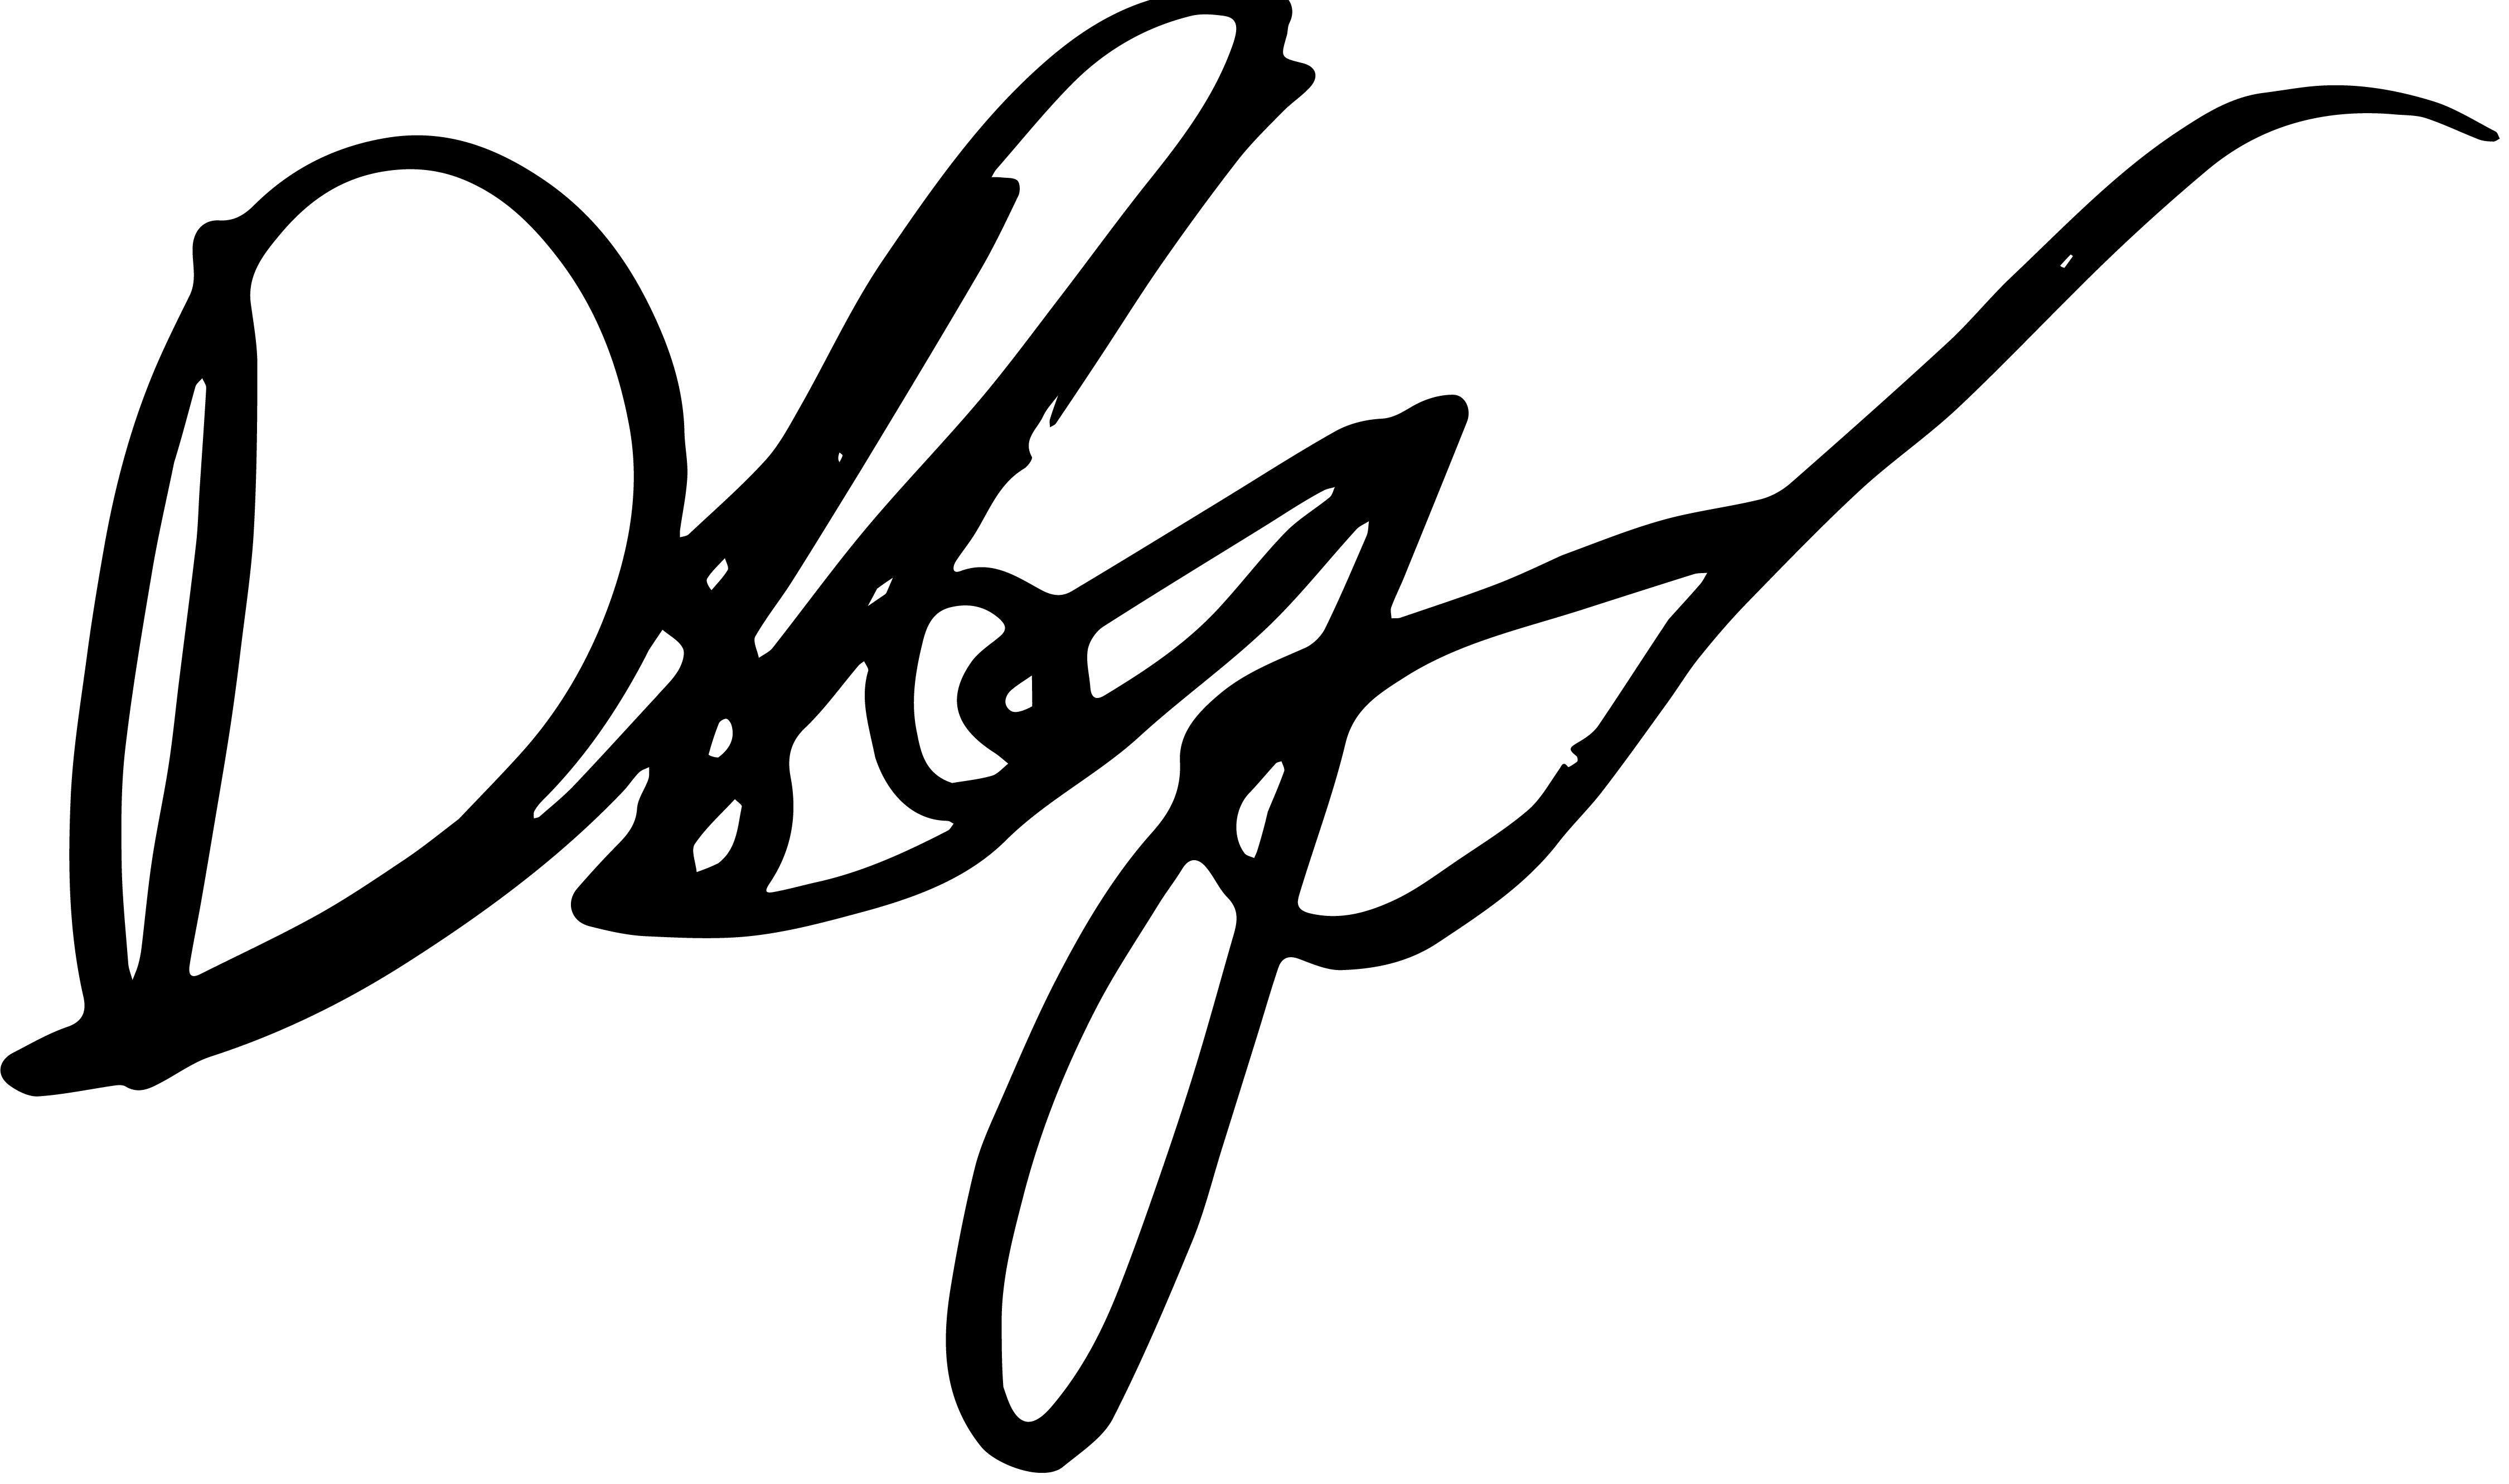 Author Signature